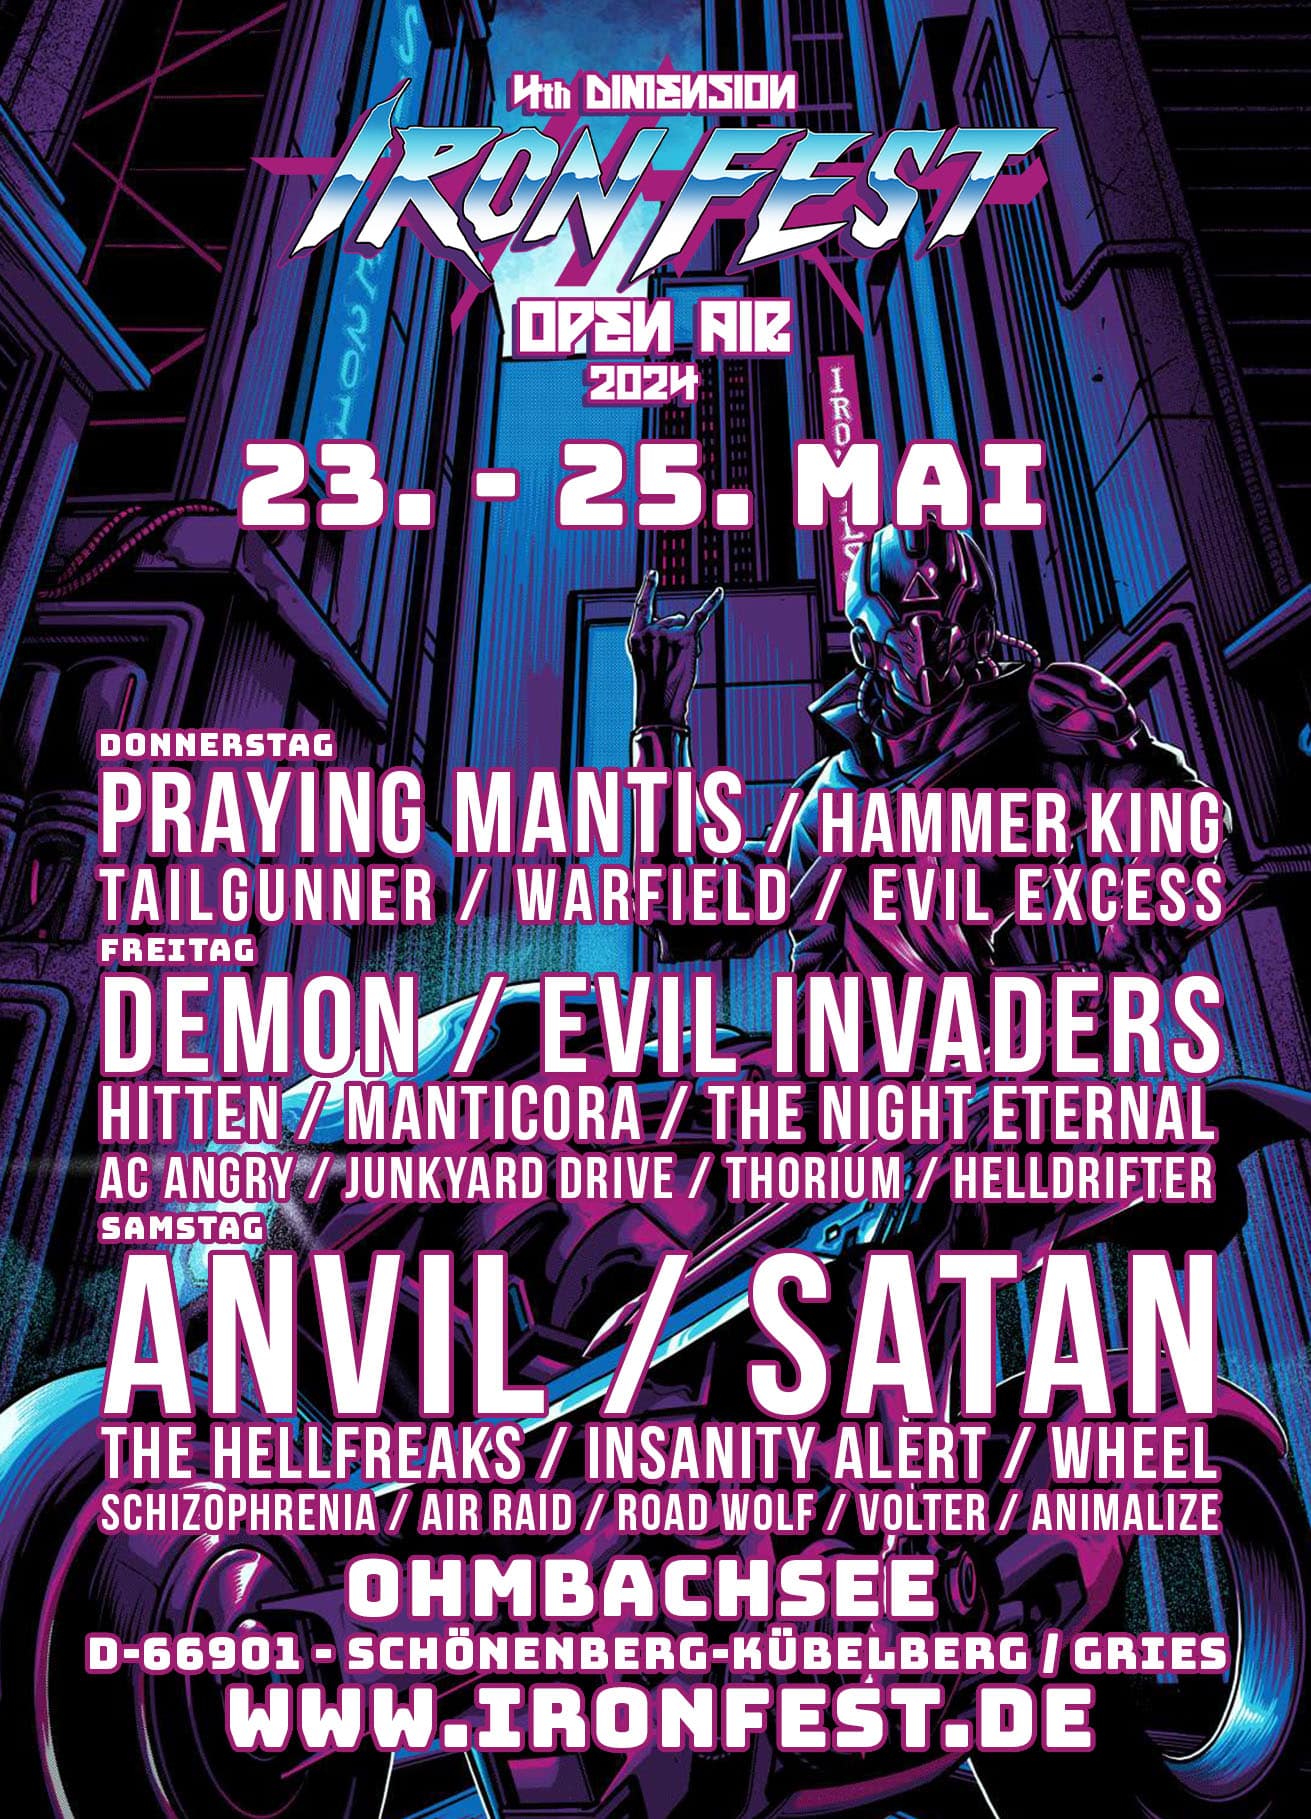 Iron Fest Open Air Rock & Heavy Metal Festival